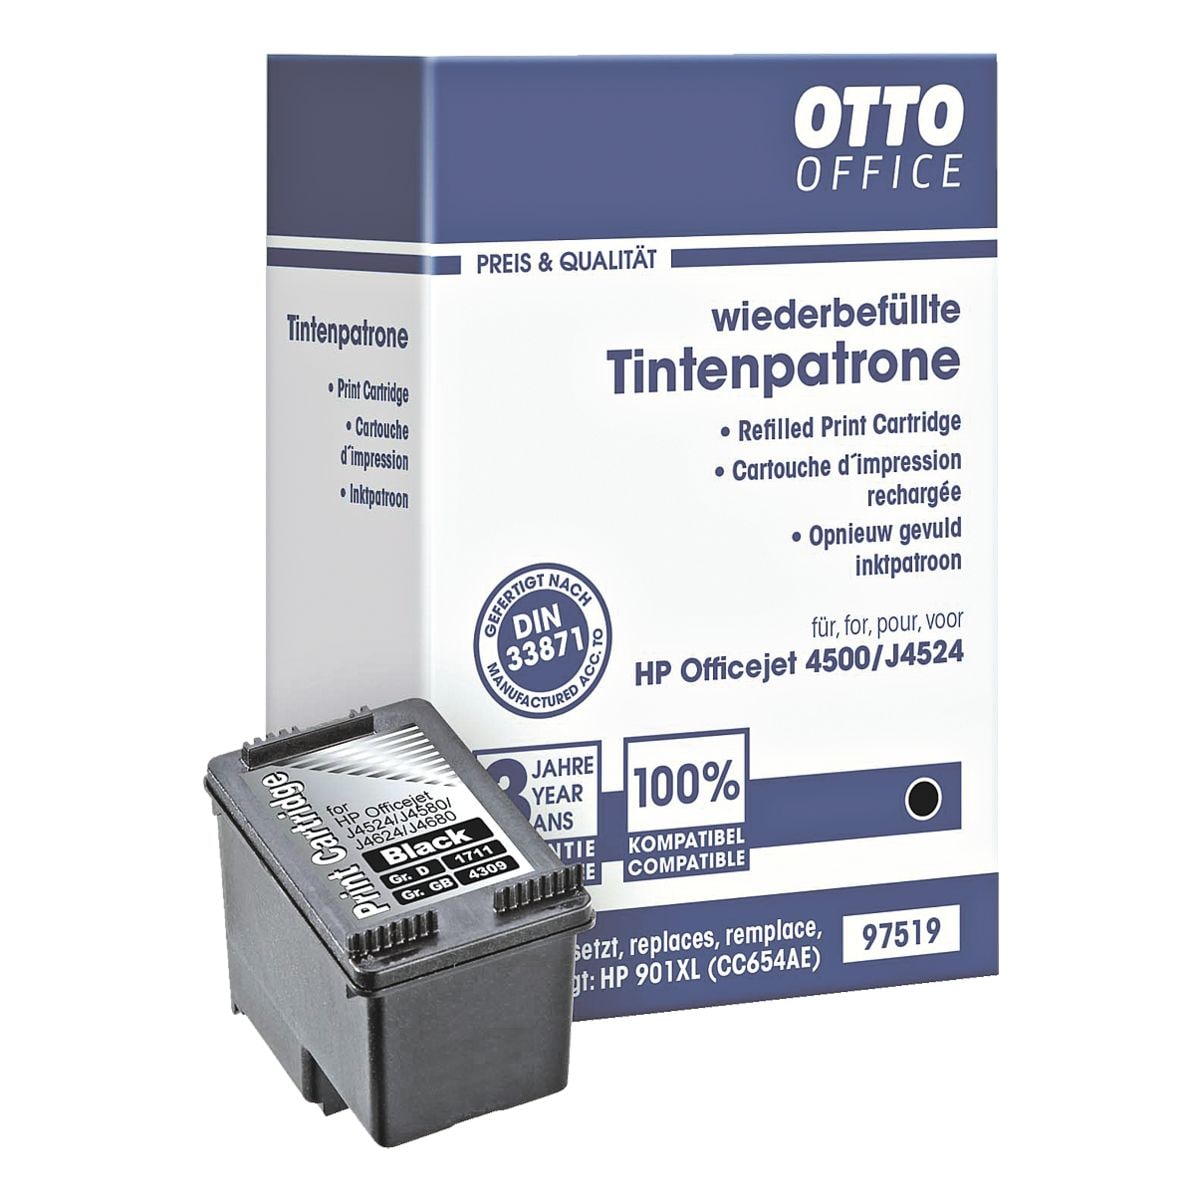 OTTO Office Tintenpatrone ersetzt Hewlett Packards CC654AE Nr. 901 (XL)